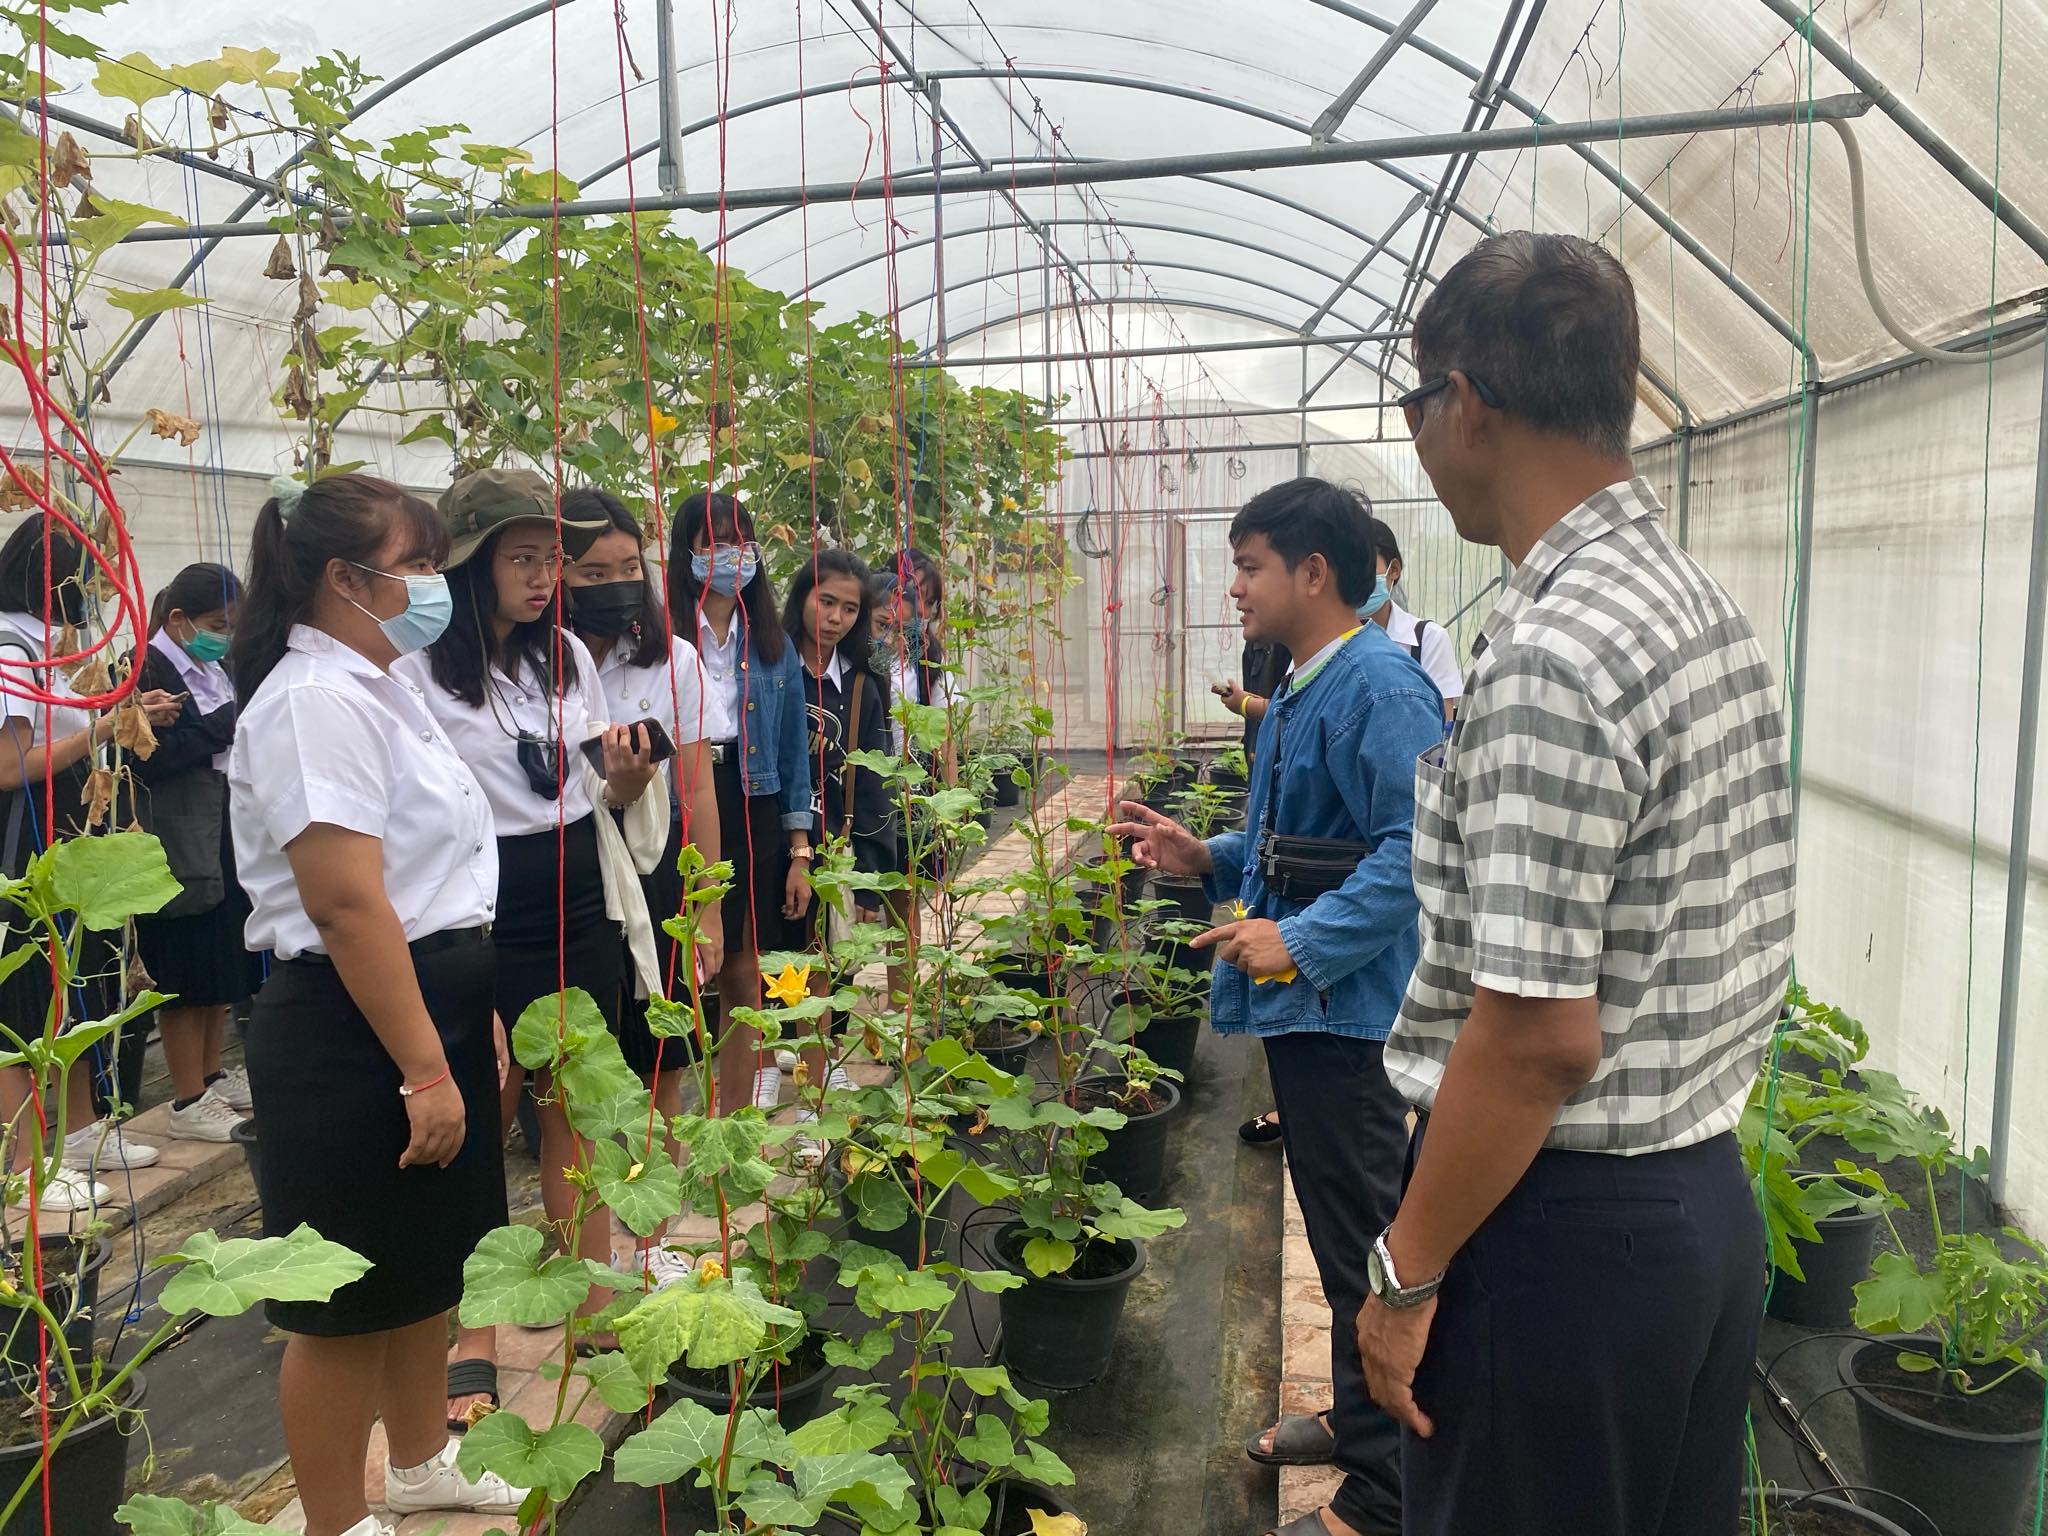 1 กันยายน 2563 งานวิชาศึกษาทั่วไปนำนักศึกษาเข้าเรียนรู้ ณ โครงการอนุรักษ์พันธุกรรมพืชฯ 